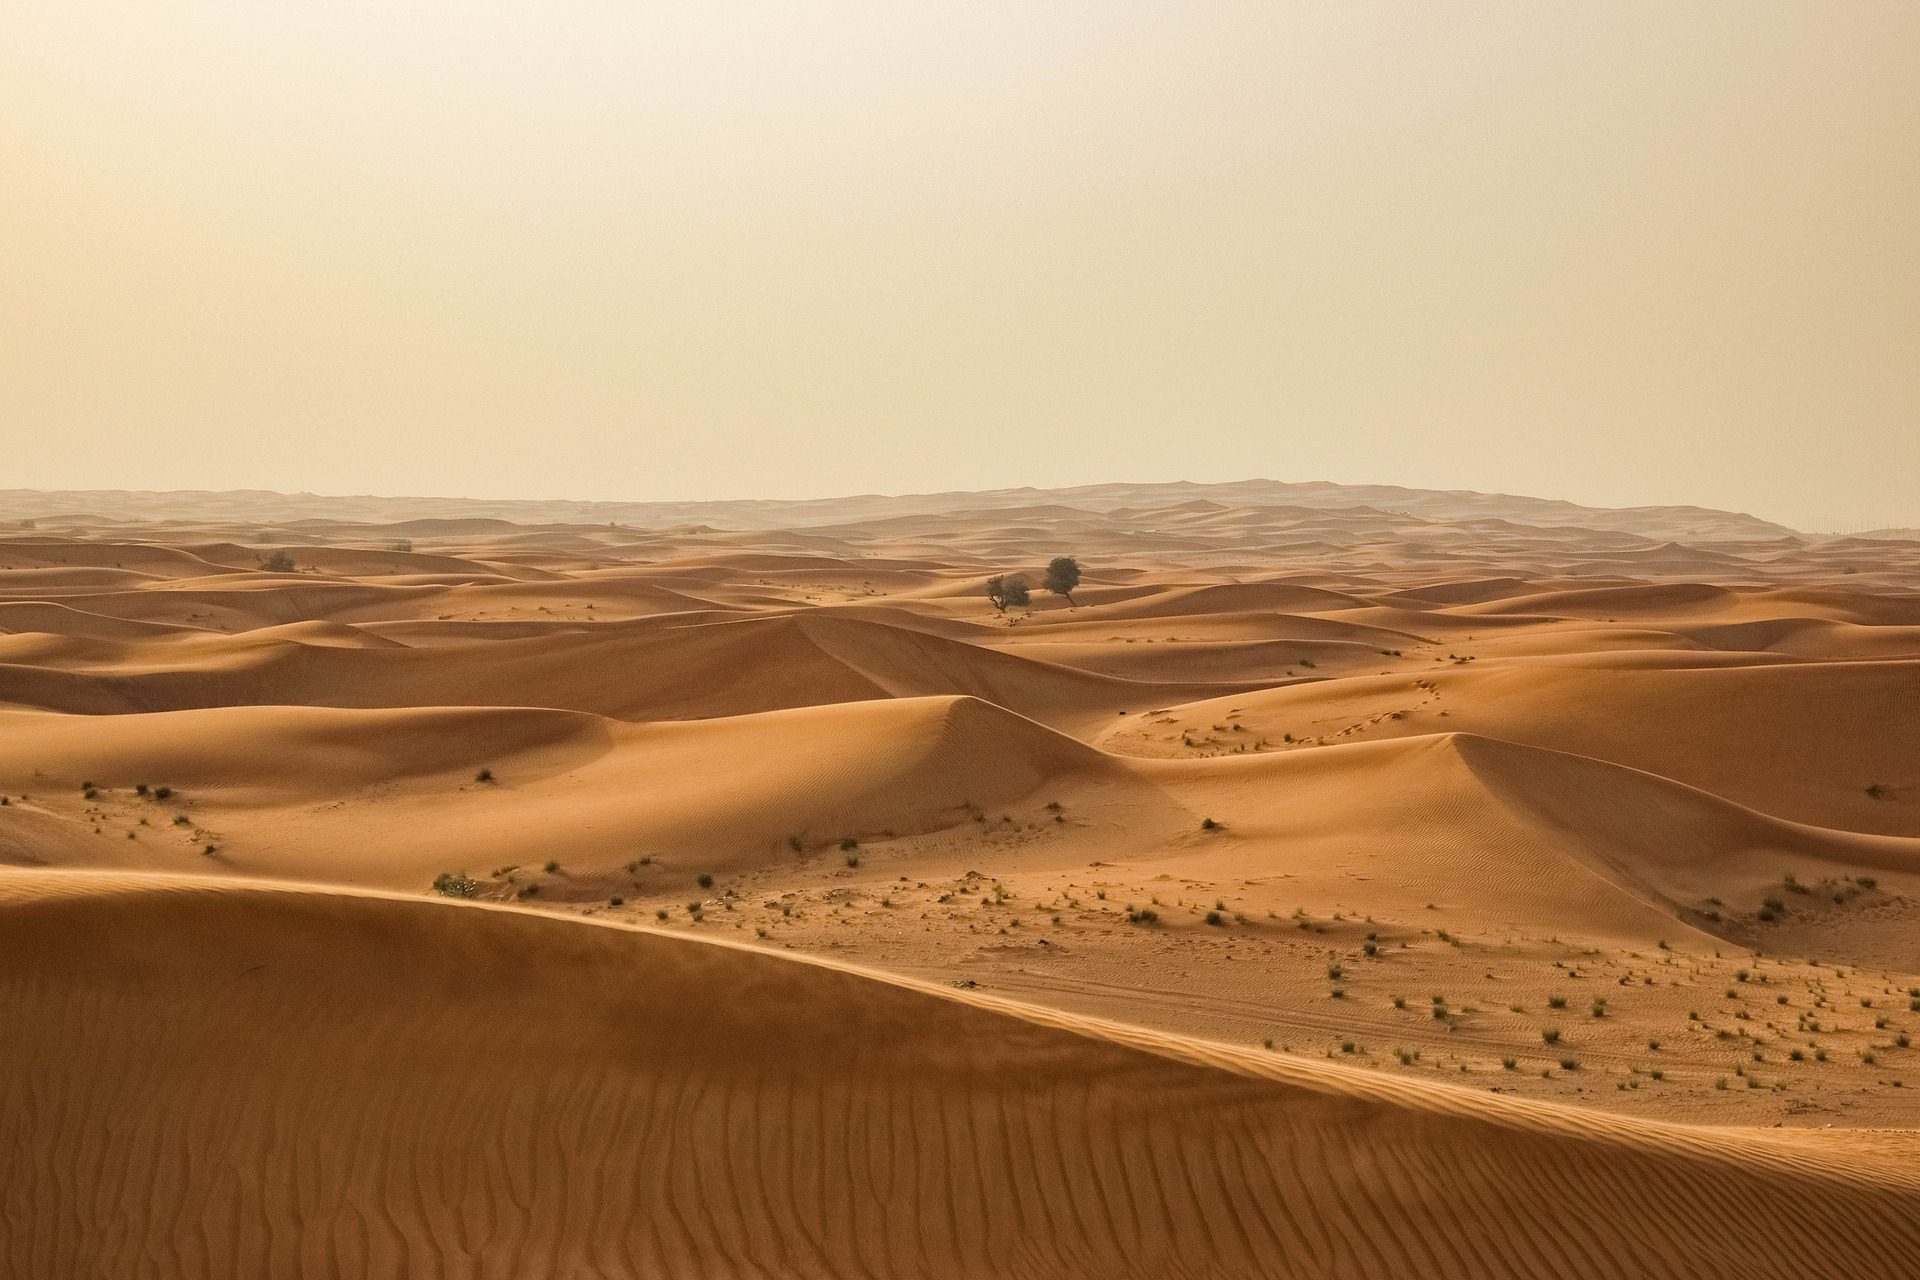 Tour de três dias e duas noites no Deserto do Saara